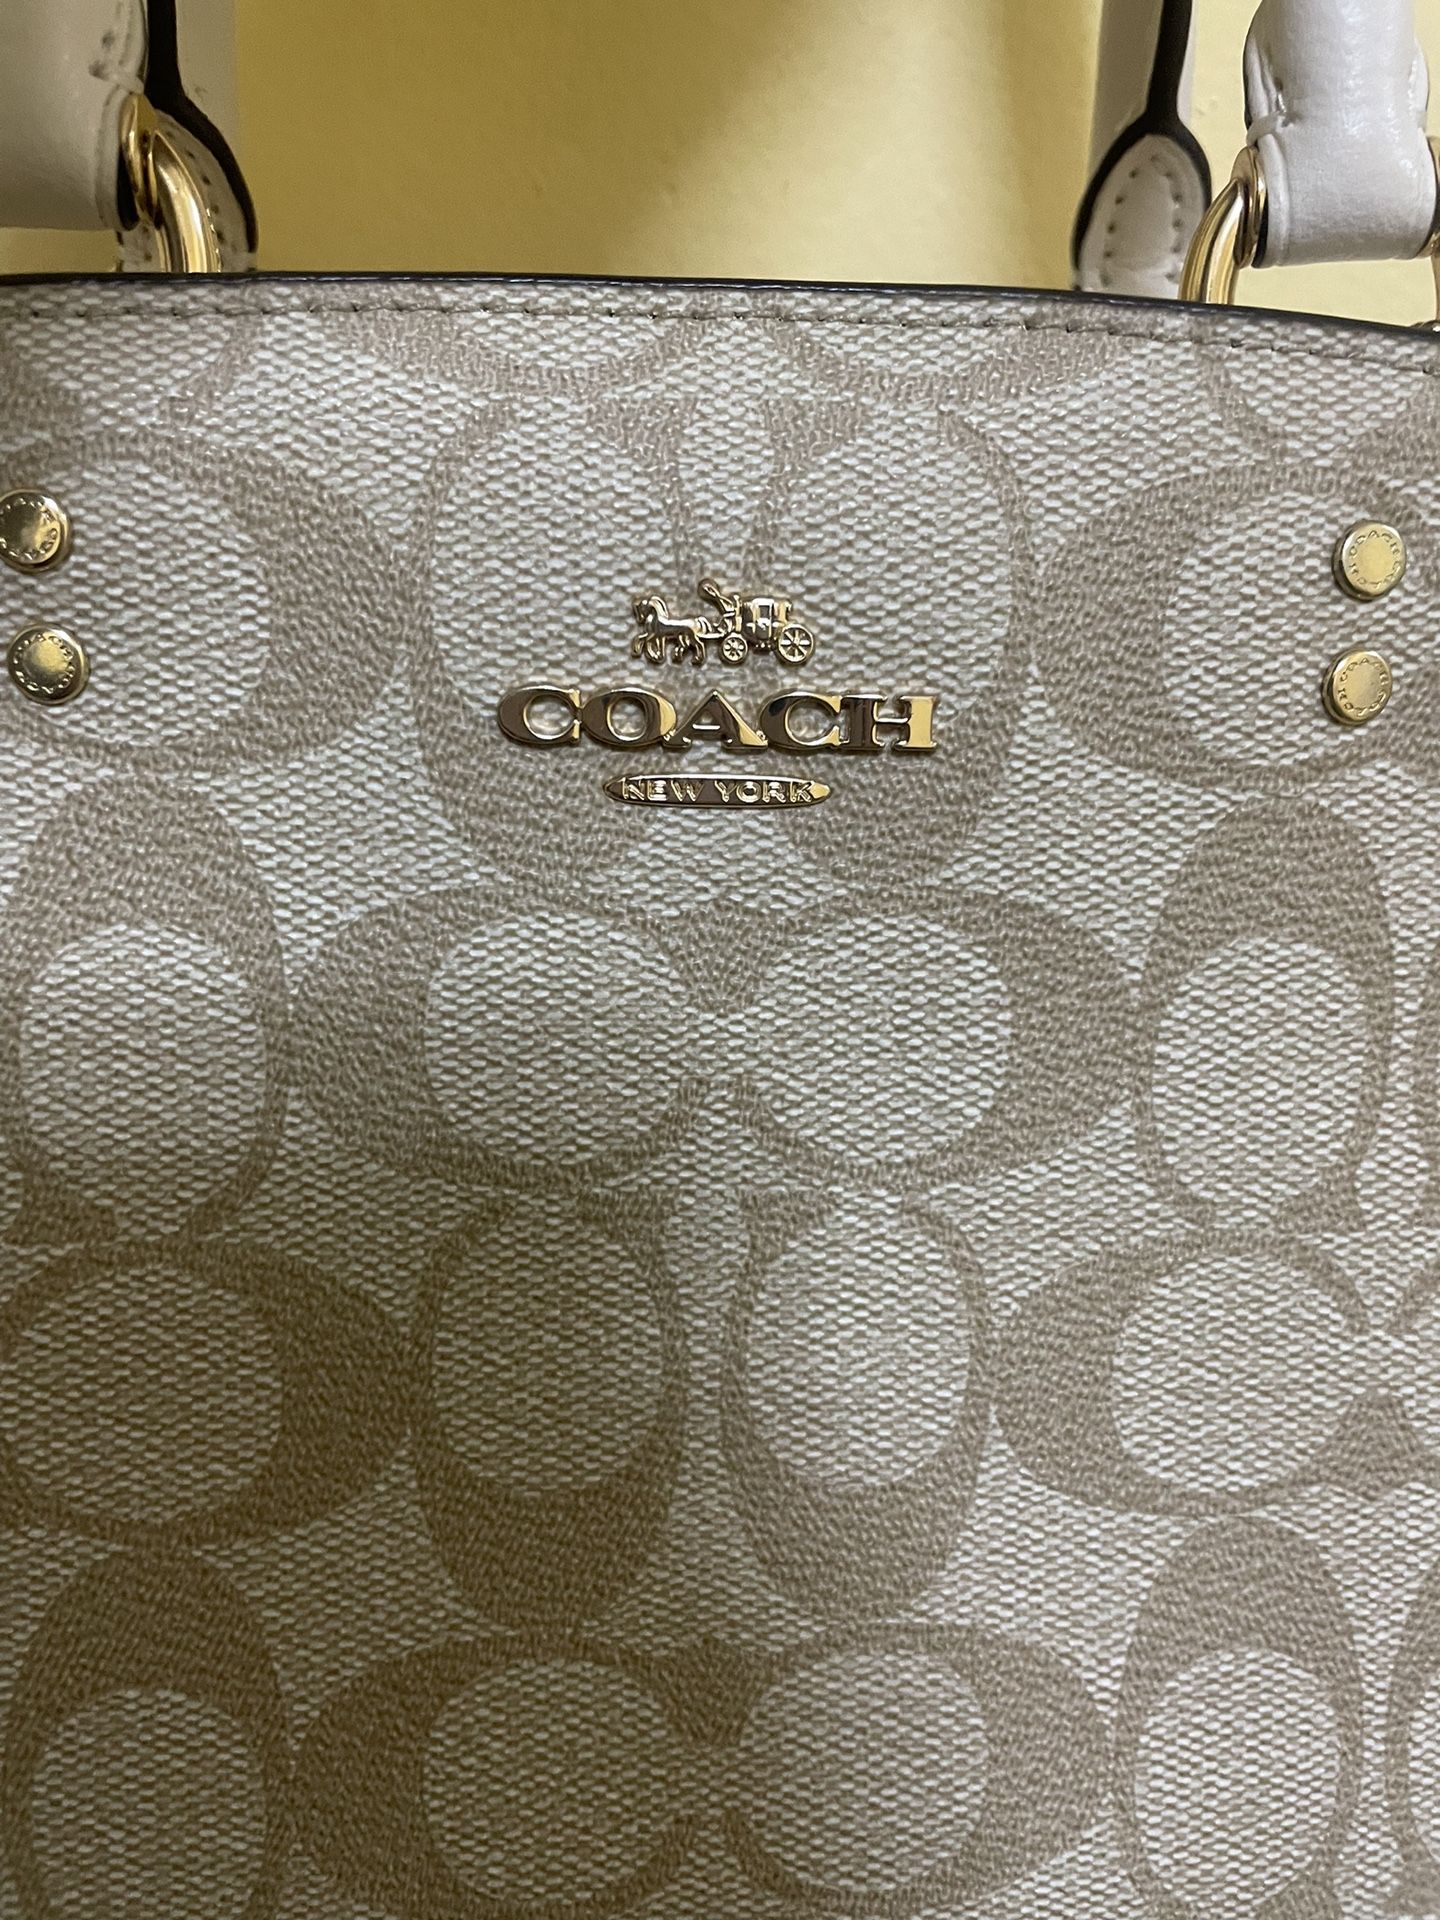 Coach Bag 